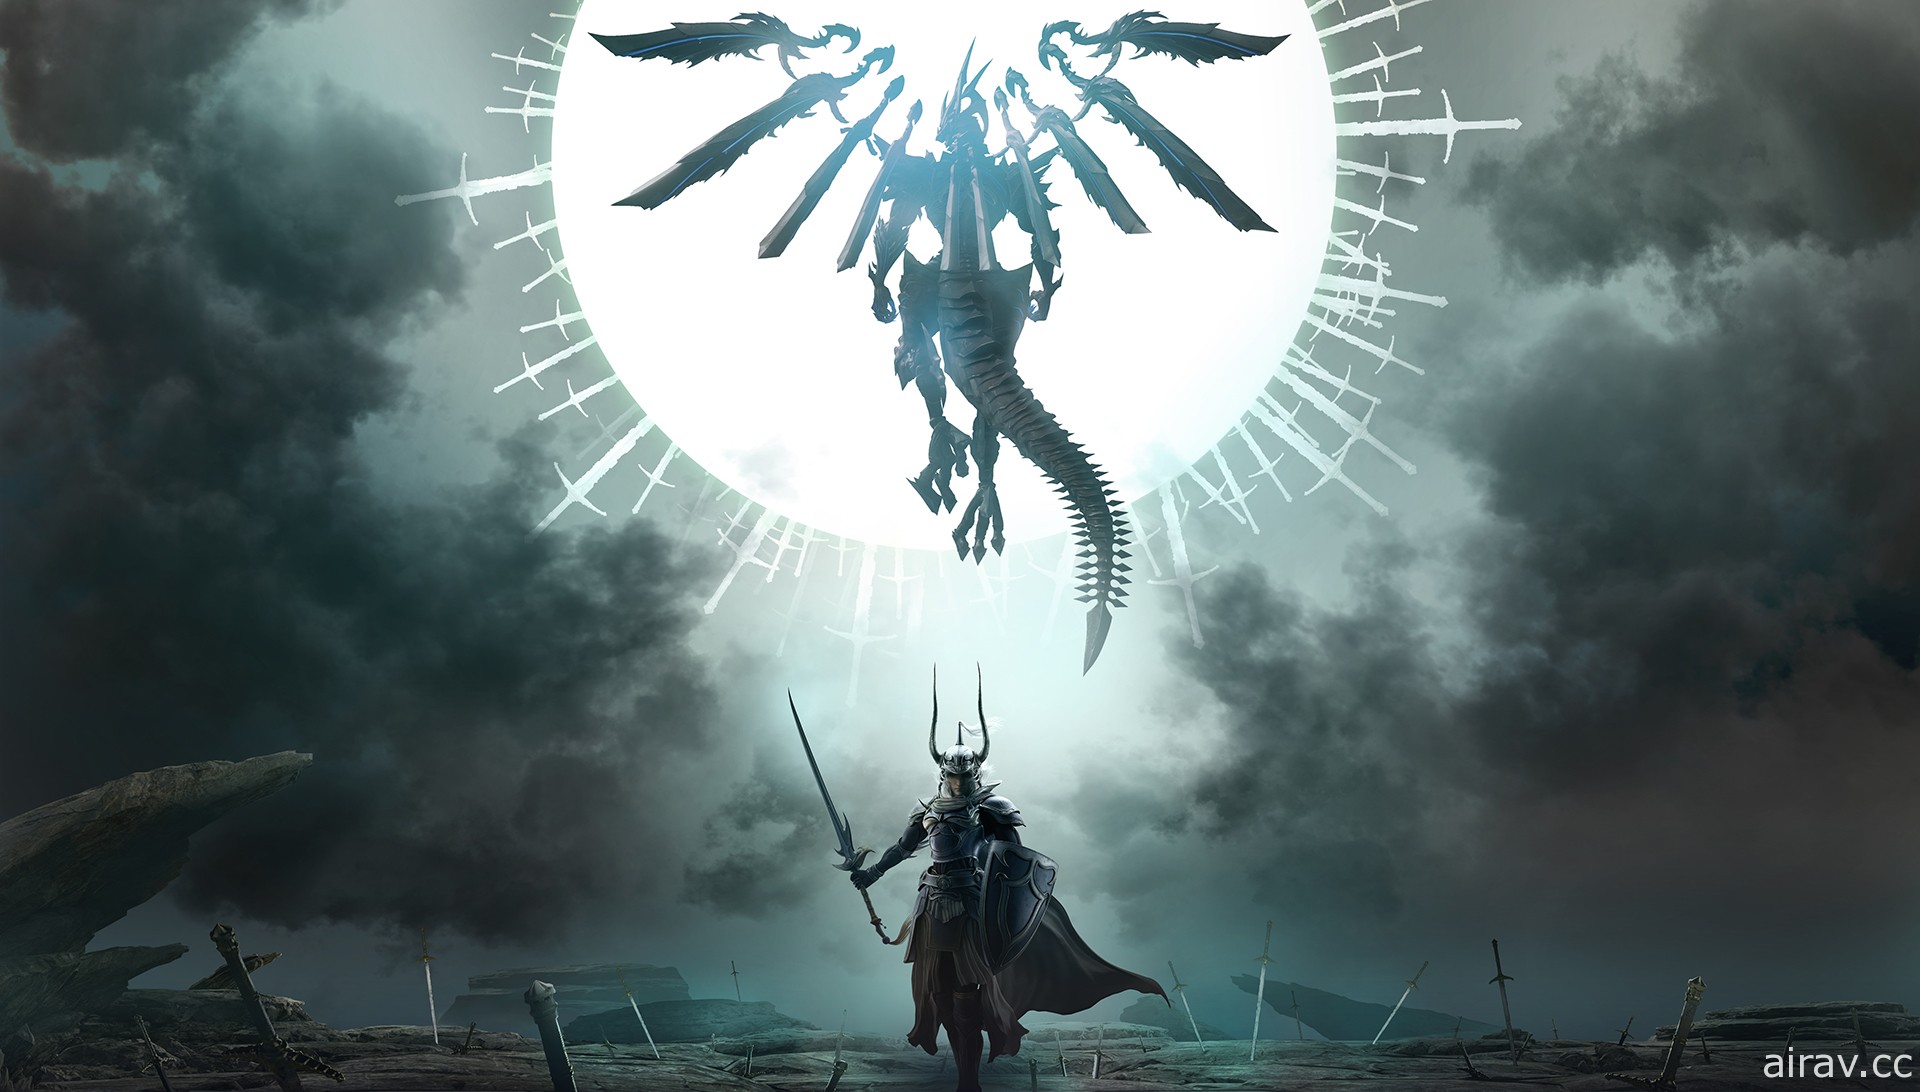 《樂園的異鄉人 Final Fantasy 起源》預定 7 月釋出追加任務「龍王巴哈姆特的考驗」